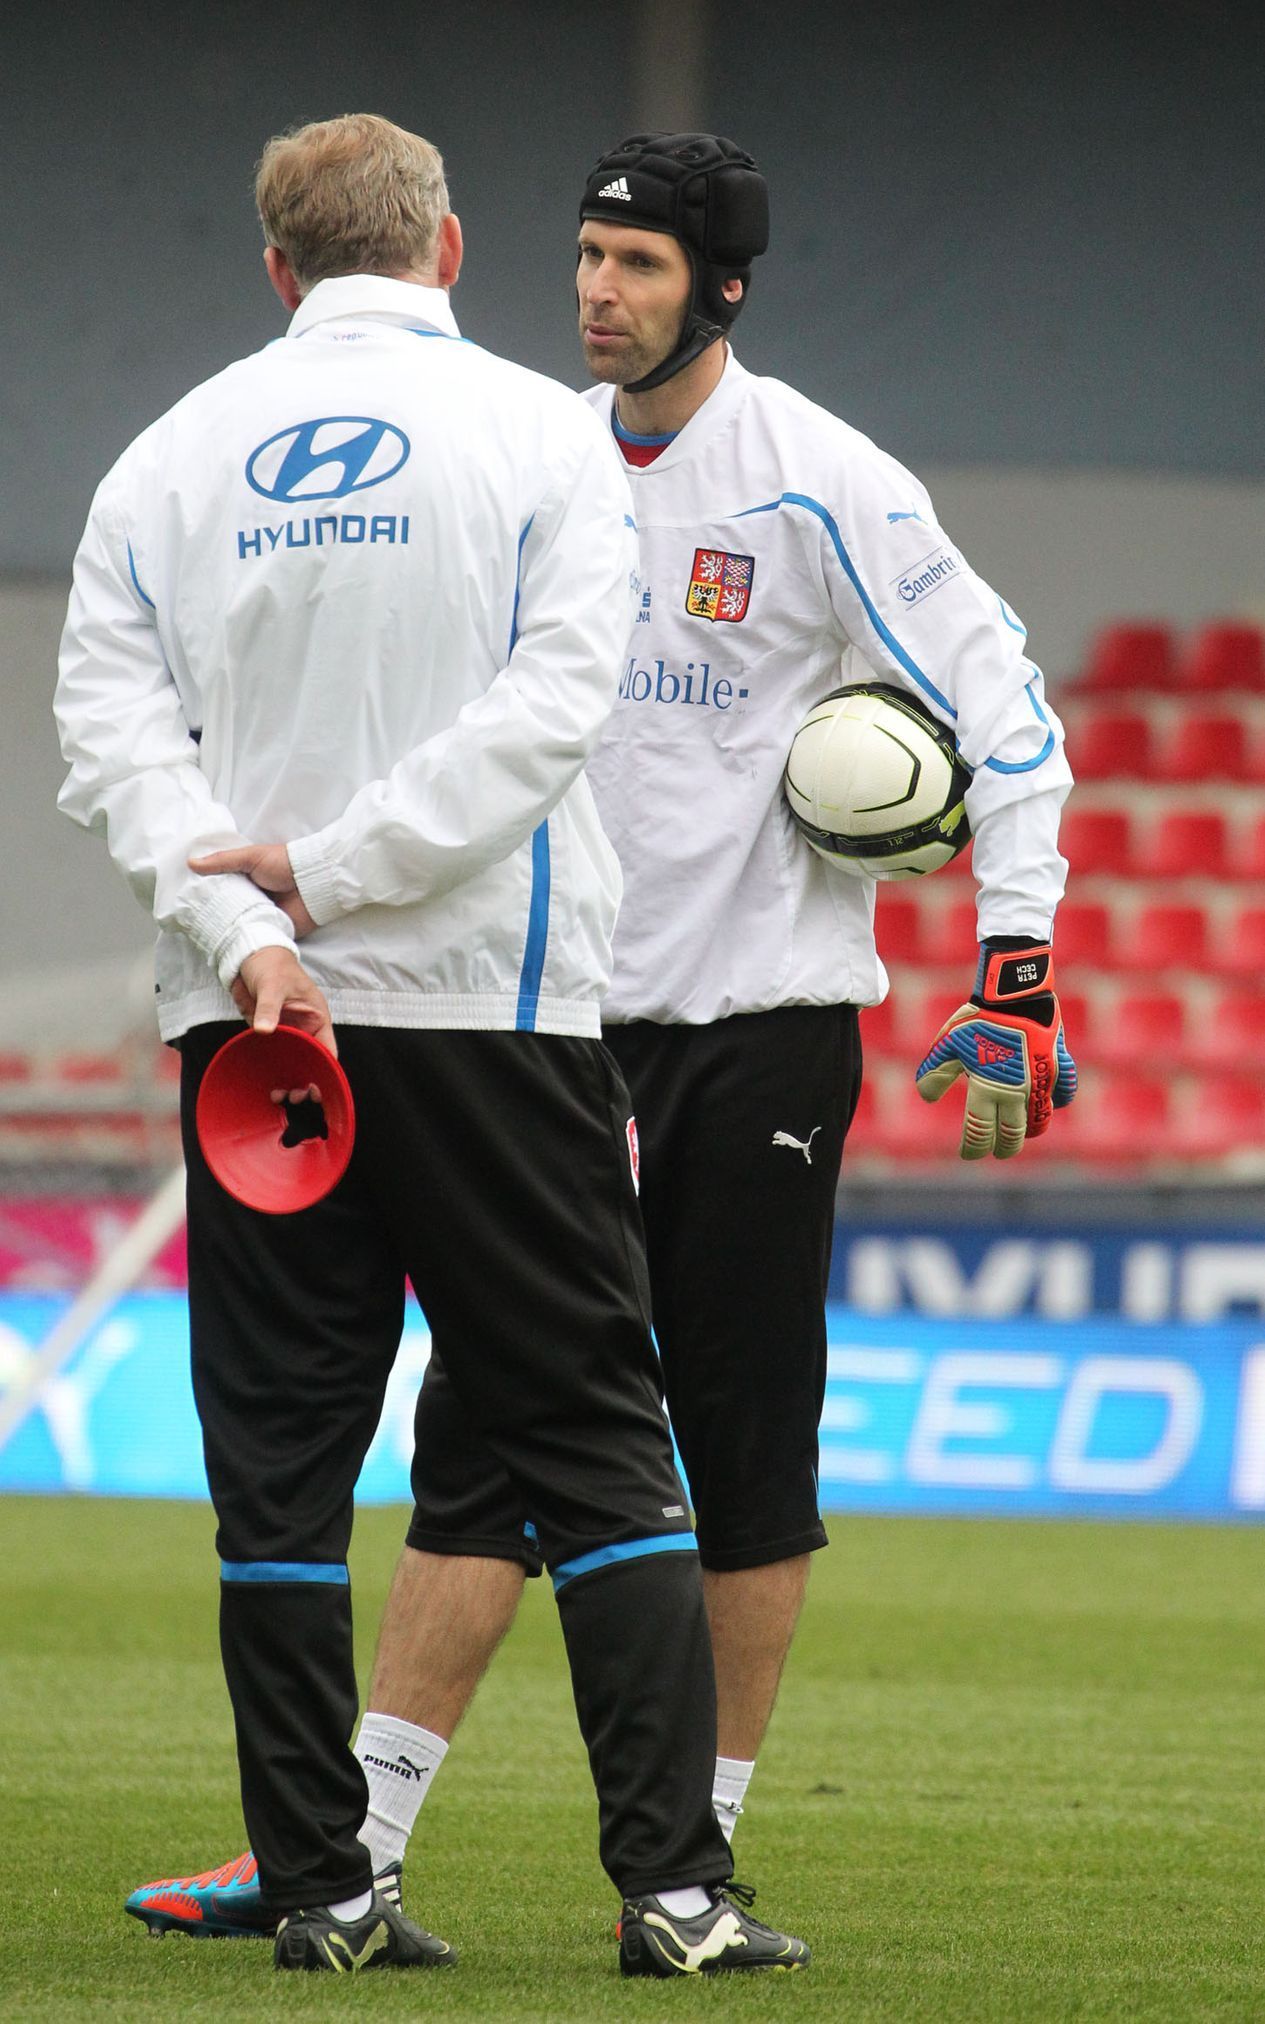 Brankář národního týmu Petr Čech na tréninku před zápasem s Bulharskem